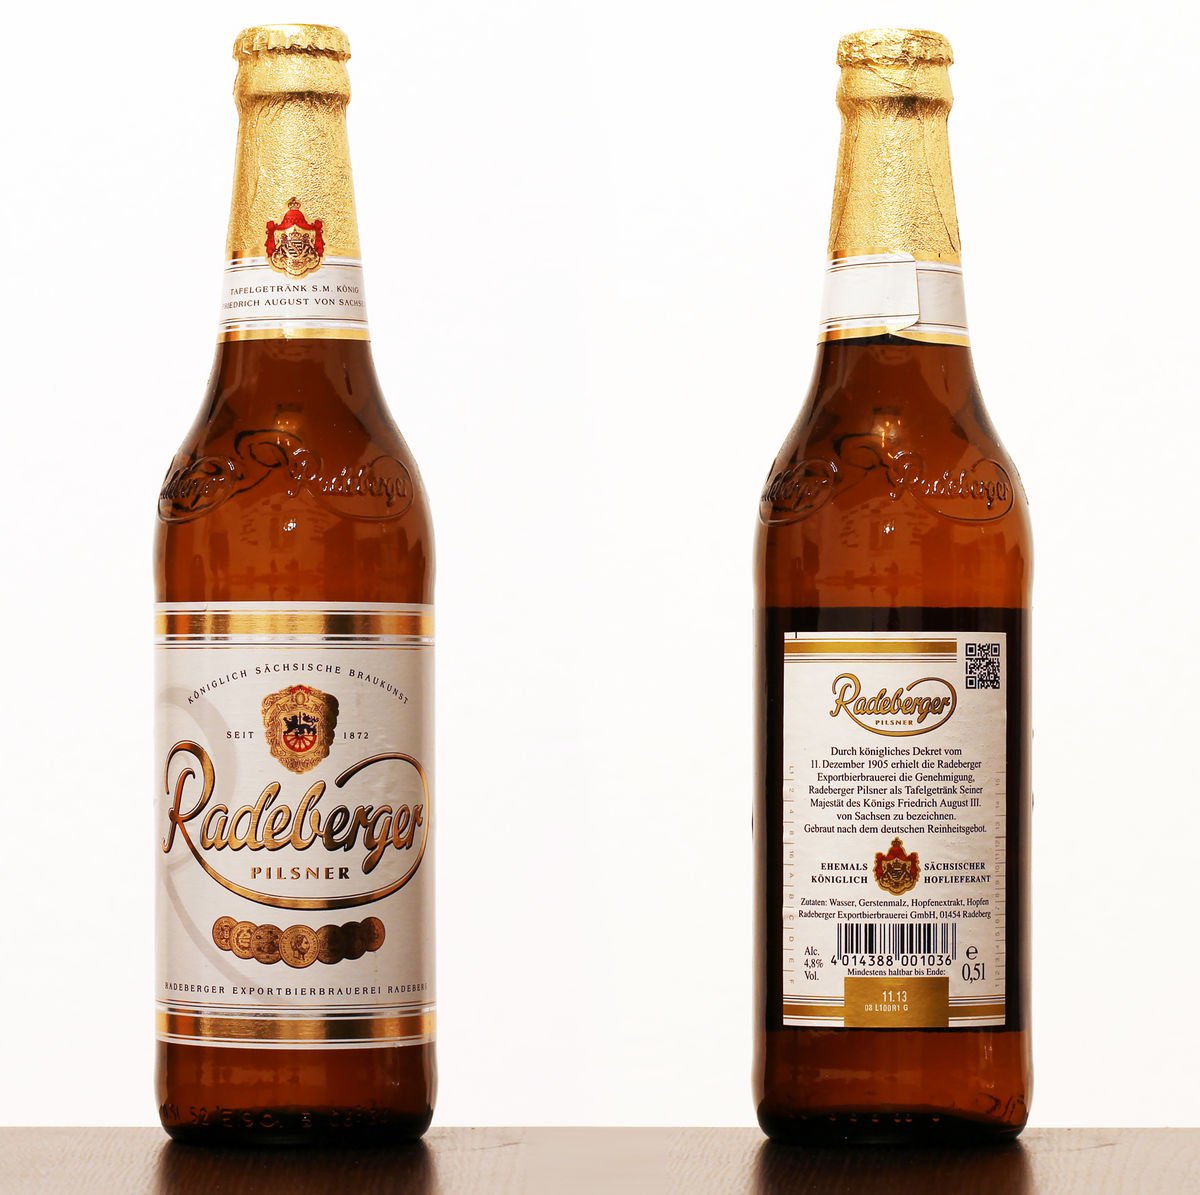 Front and back bottle of Radeberger Pilsner